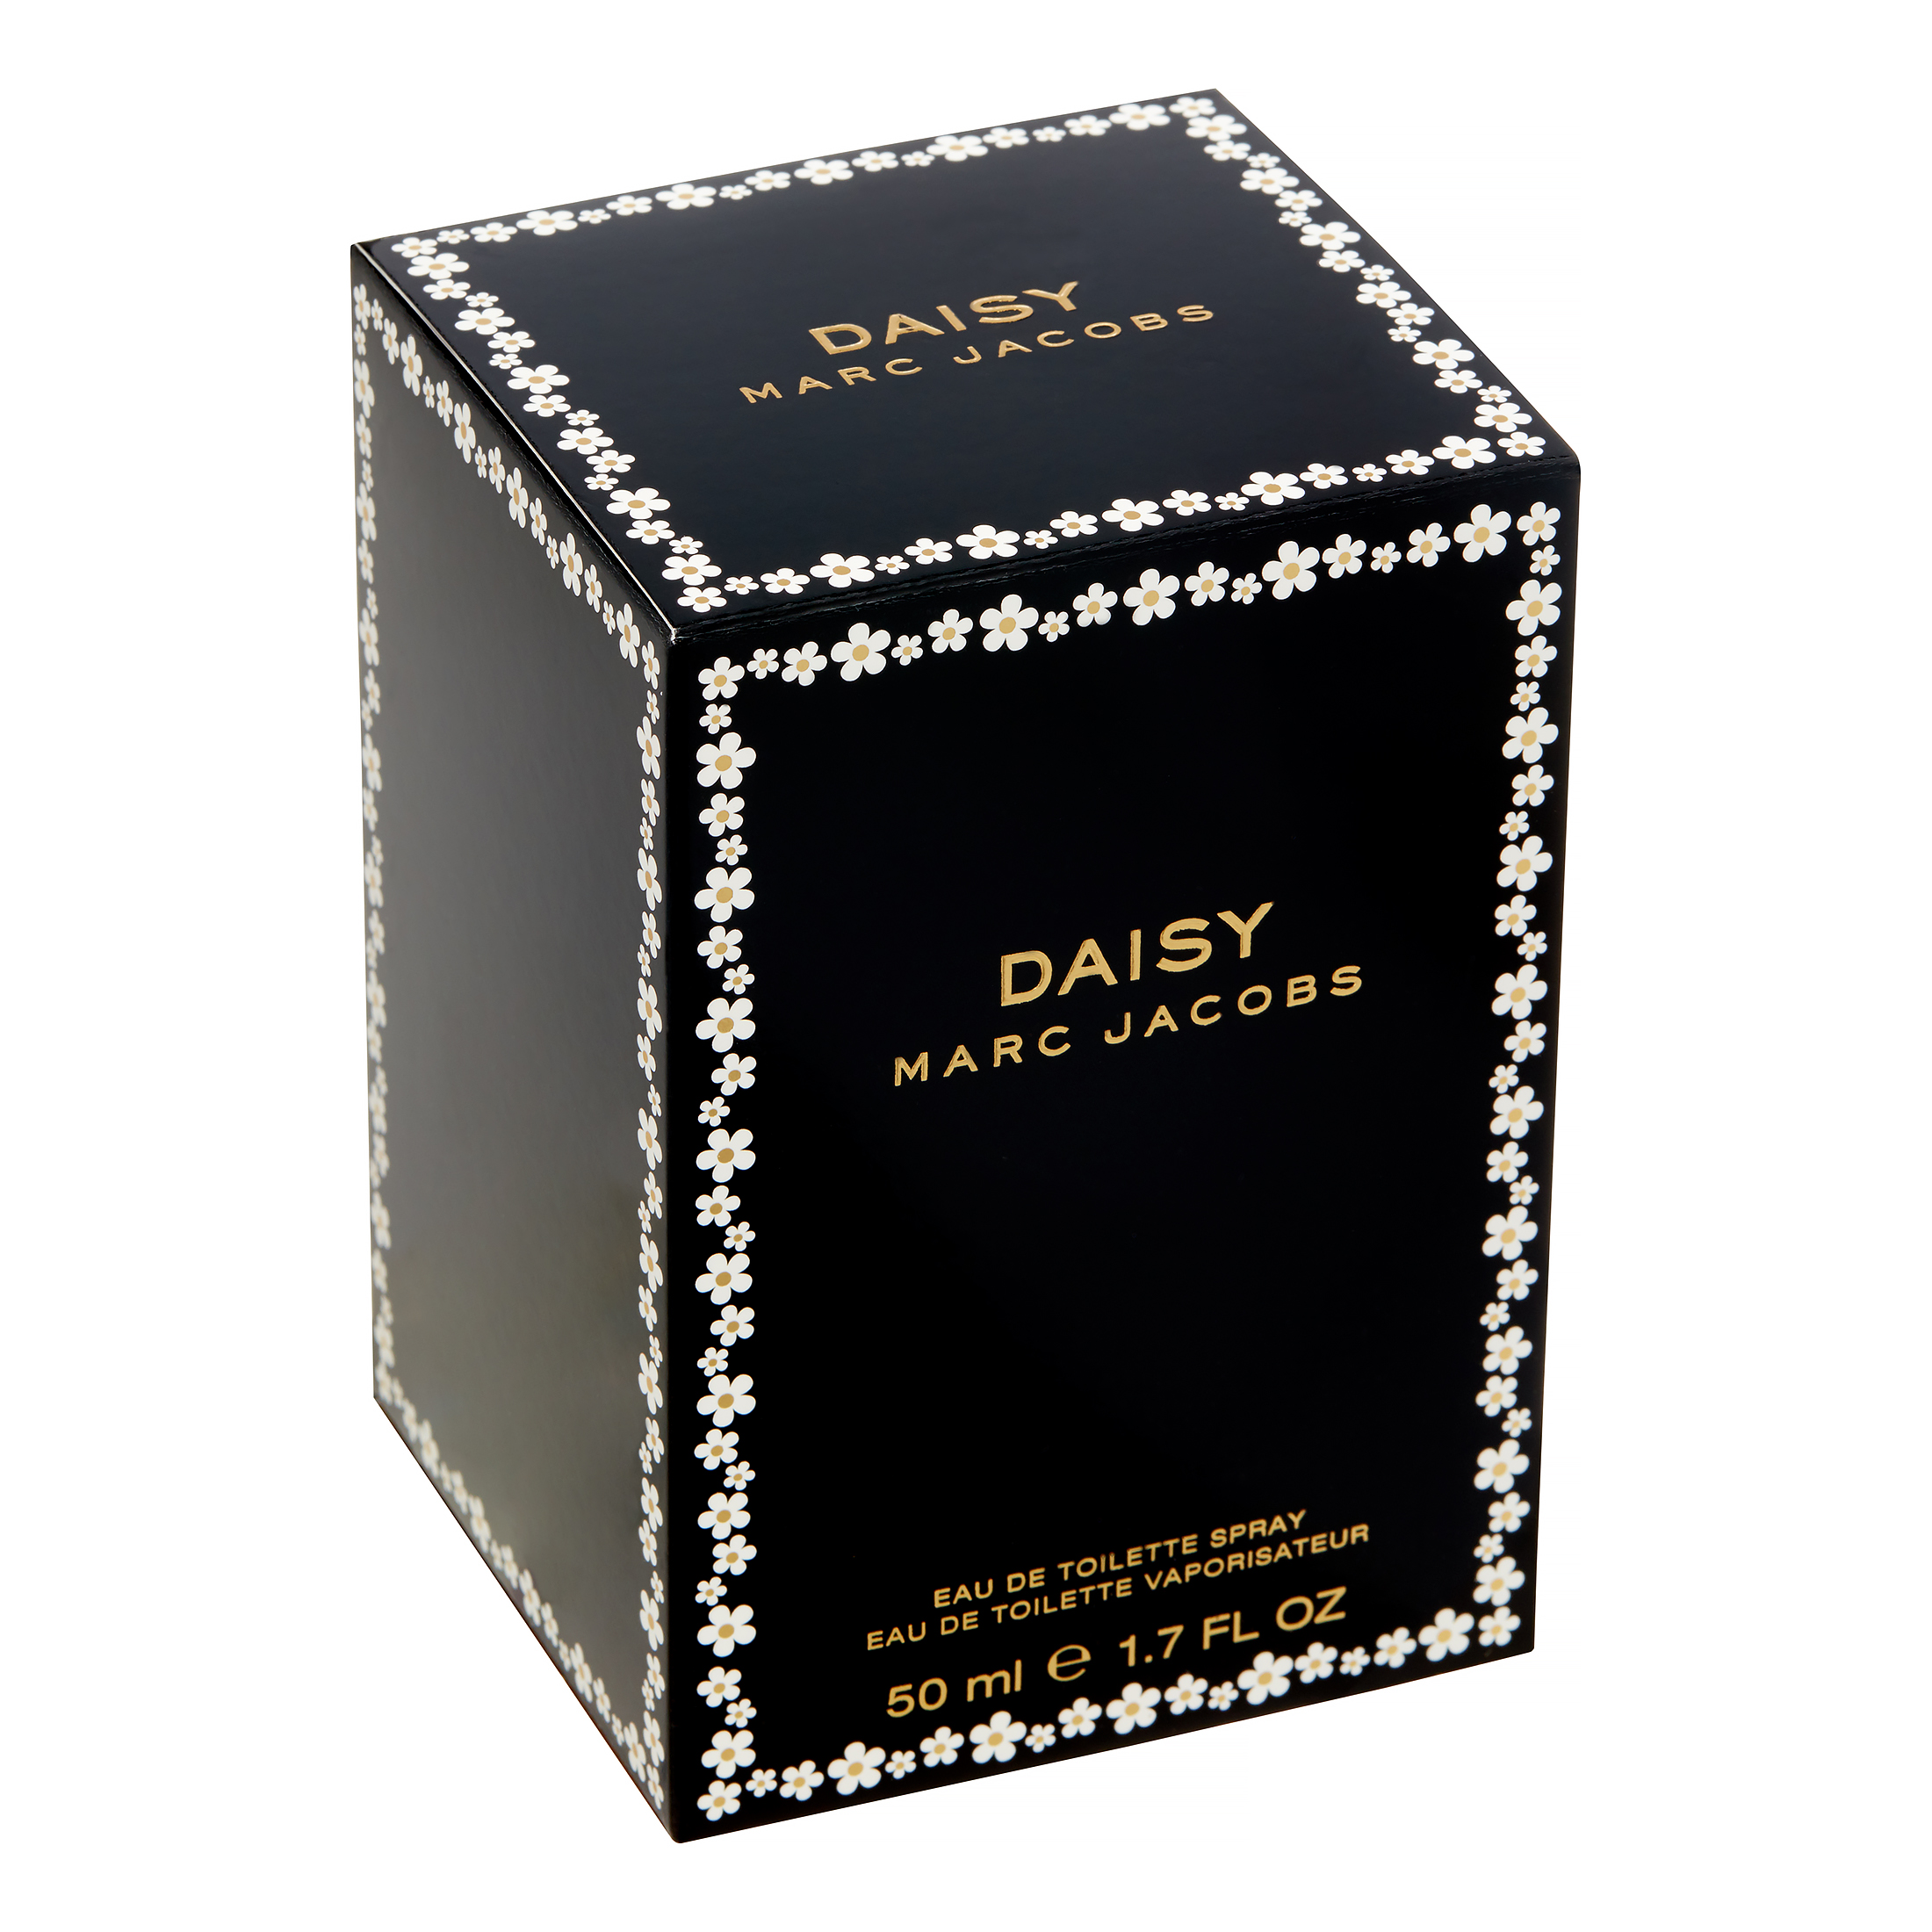 Marc Jacobs Daisy Eau De Toilette, Perfume for Women, 1.7 Oz - image 5 of 8